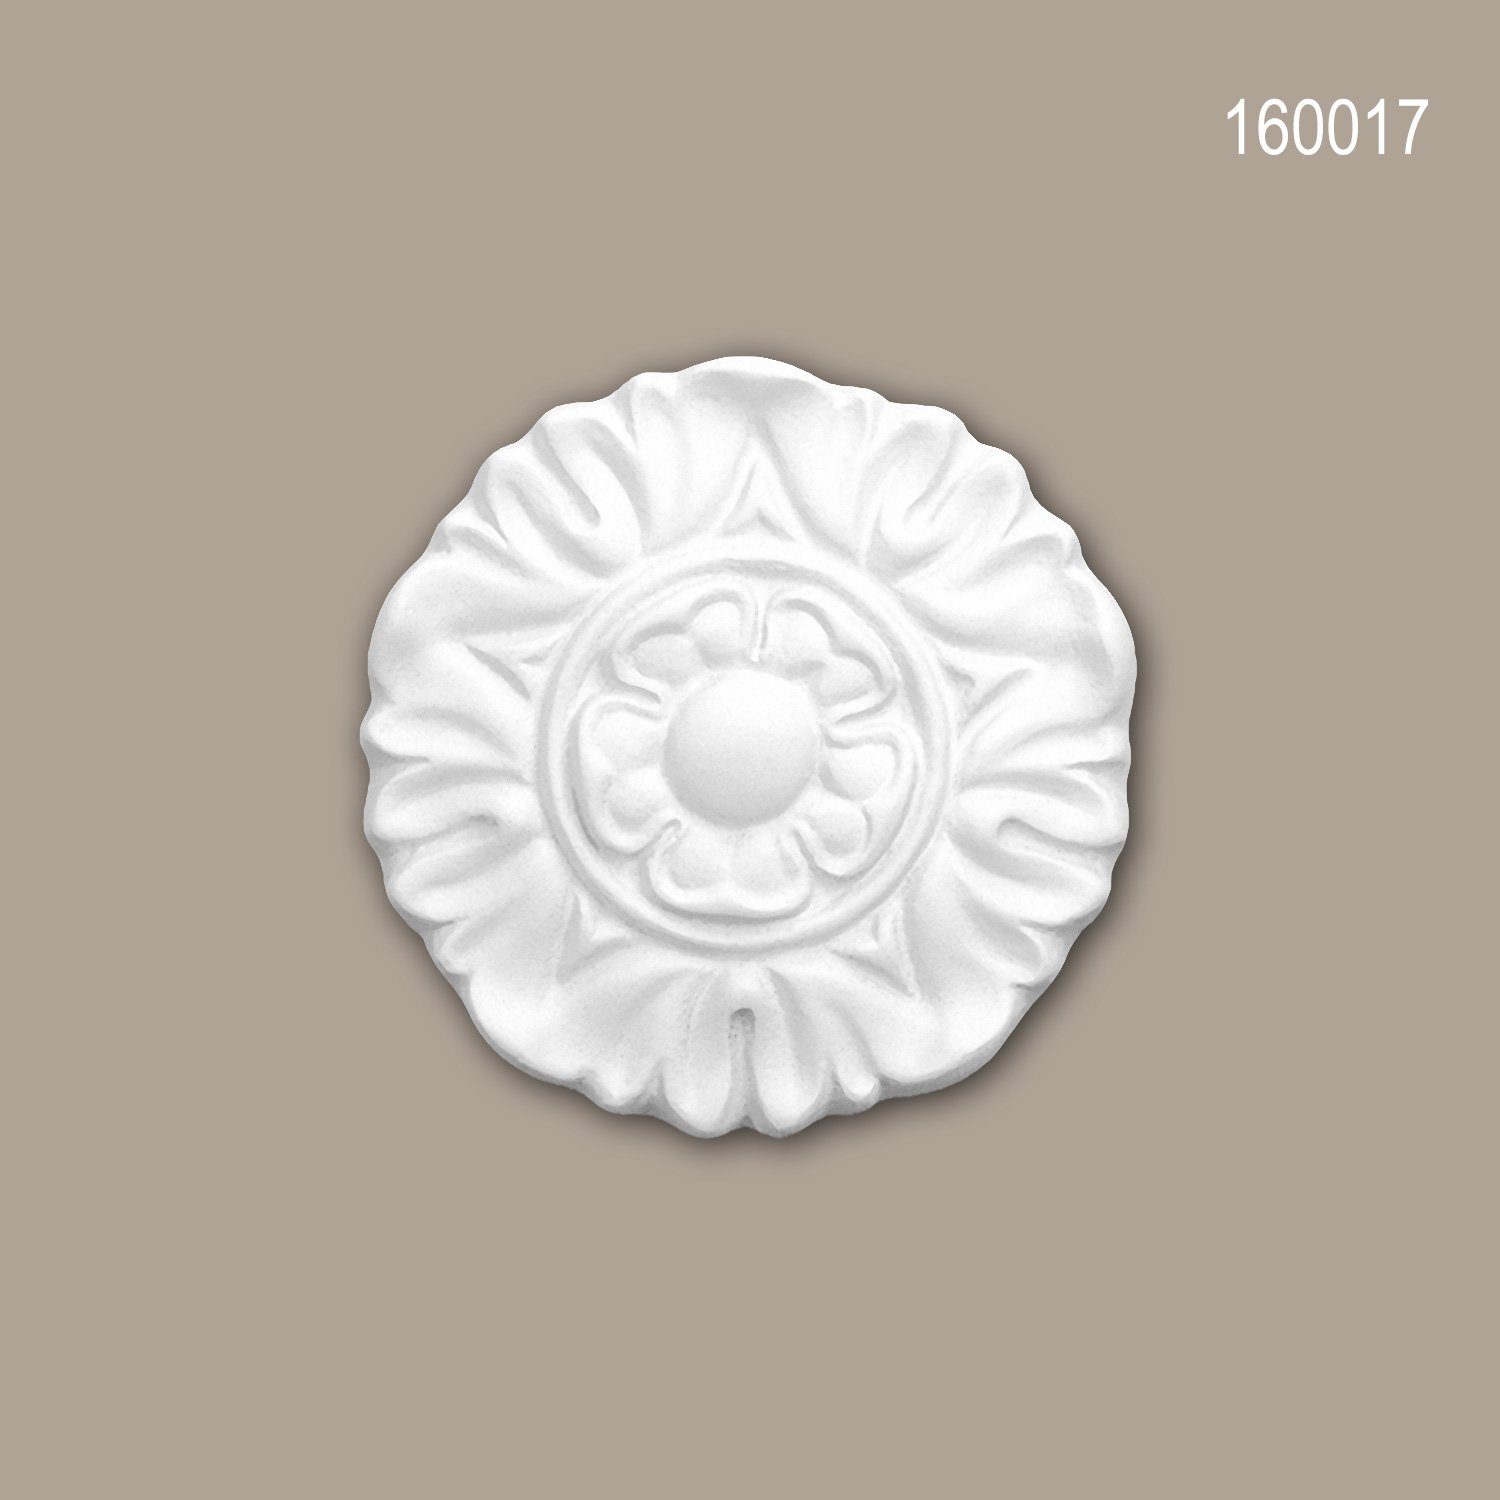 Profhome Wanddekoobjekt 160017 (Zierelement, 1 St., Stuckdekor, Schmuckelement, Dekorelement, Rosette, Durchmesser 9 cm), weiß, vorgrundiert, Stil: Neo-Klassizismus